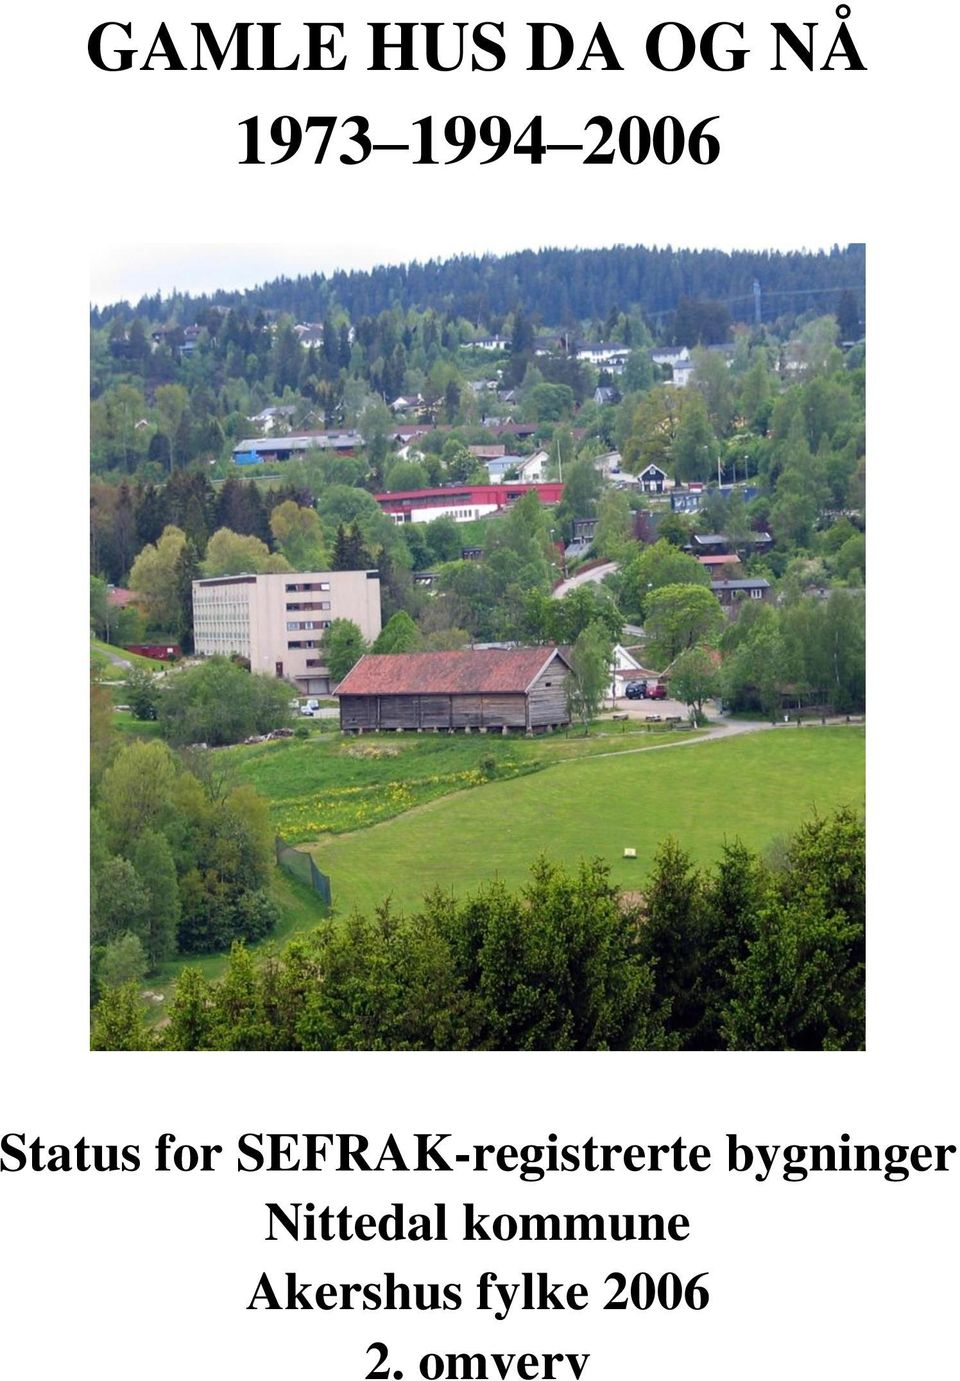 SEFRAK-registrerte bygninger